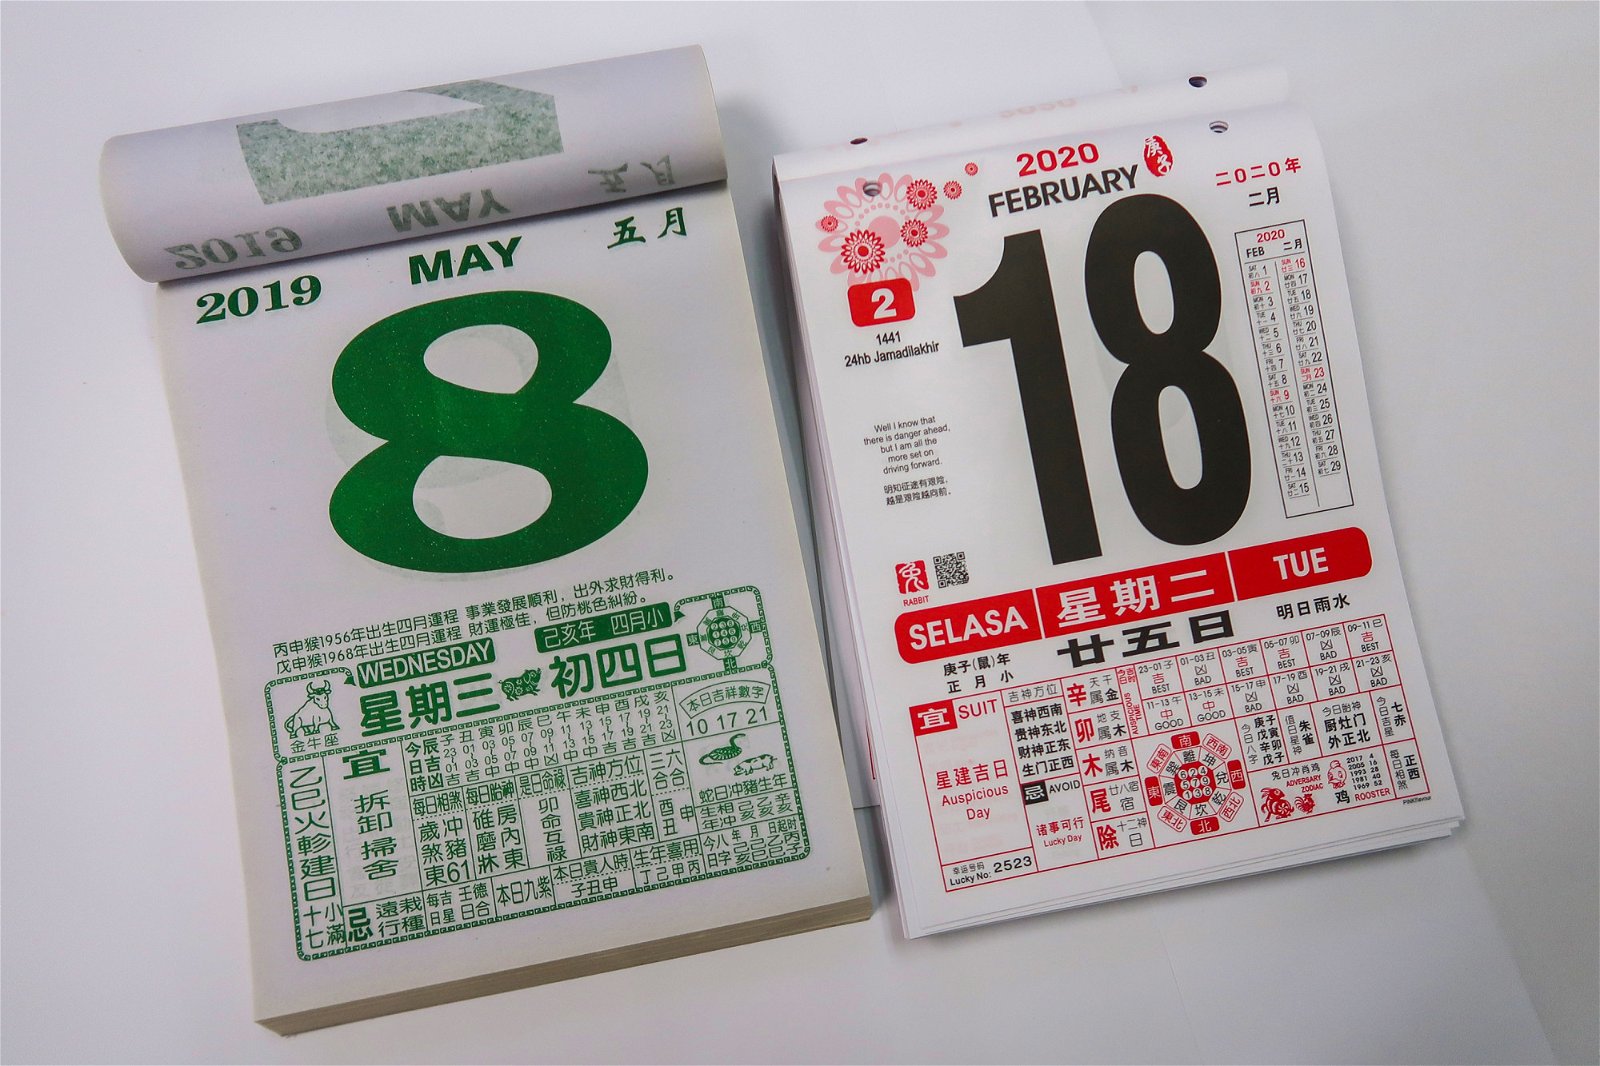 中国制日历（左）与本地制日历摆放在一起，一眼就能看出两者差别。前者仍保持传统形式，纸质较薄，颜色只有绿色（平日）与红色（周末）；后者则采用纸质较厚的日本或韩国纸，颜色为黑红相间，看起来更有质感。